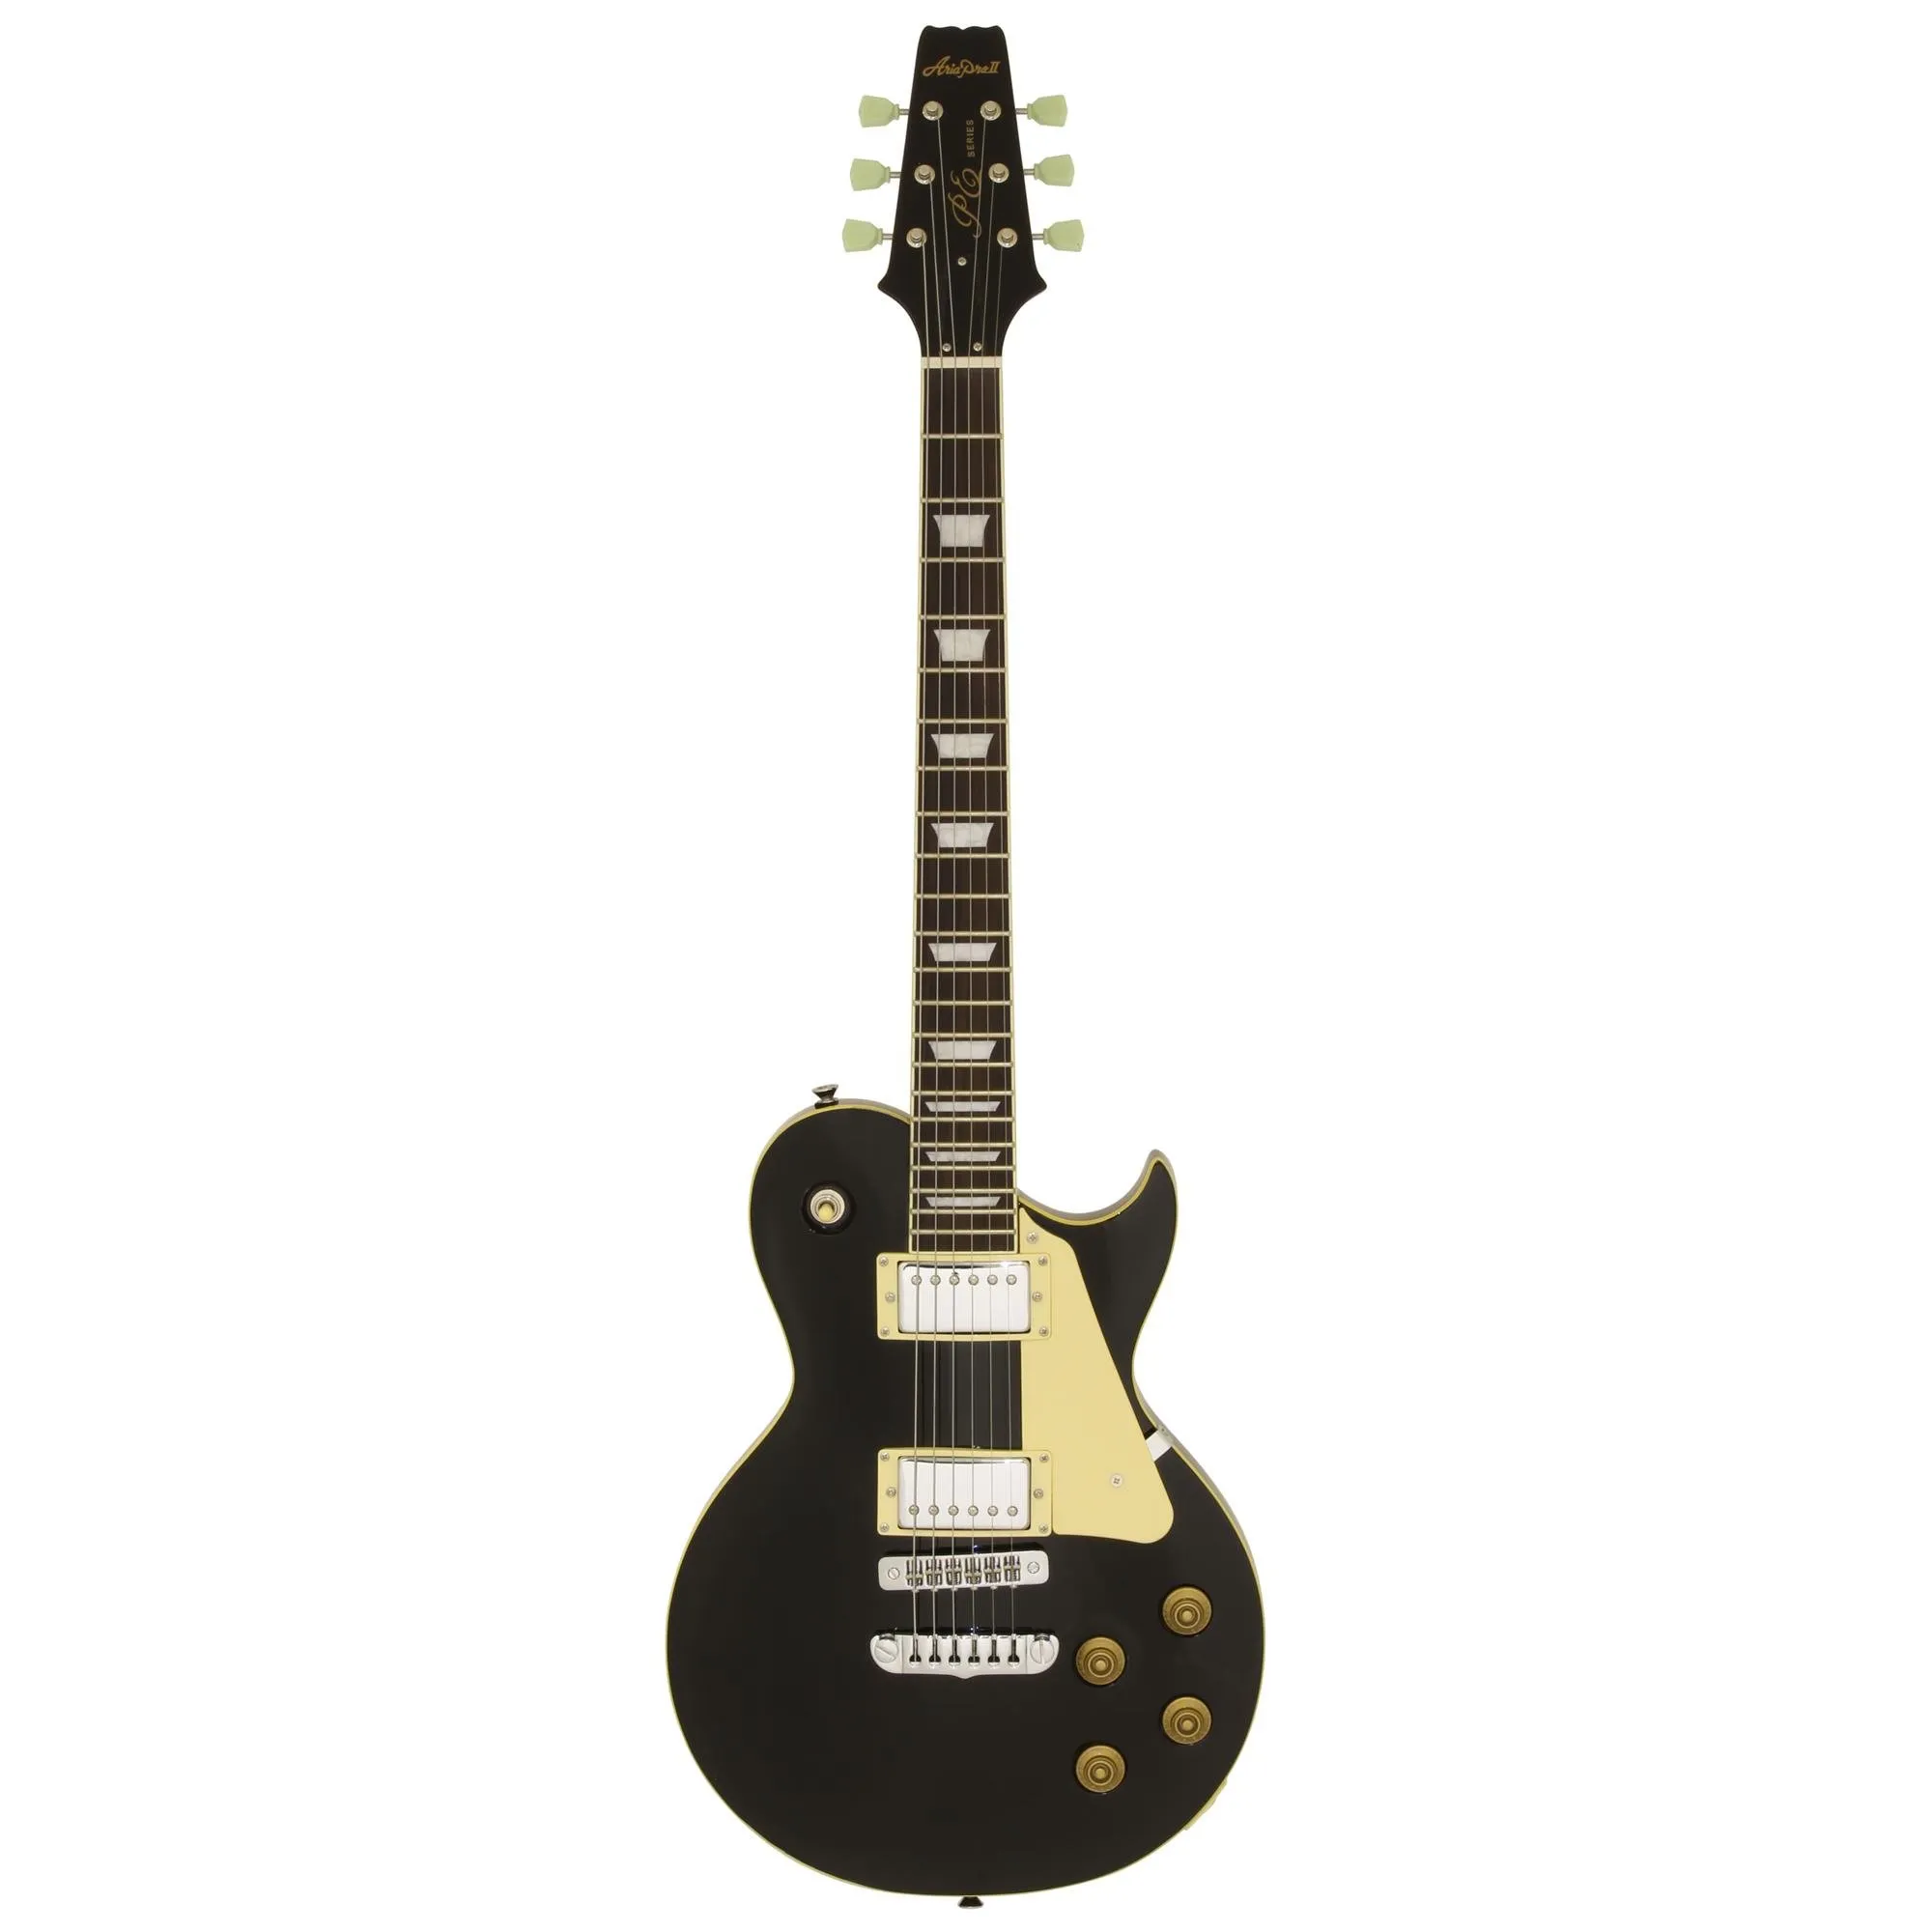 Guitarra Aria PE-350STD Aged Black por 2.796,00 à vista no boleto/pix ou parcele em até 12x sem juros. Compre na loja Mundomax!